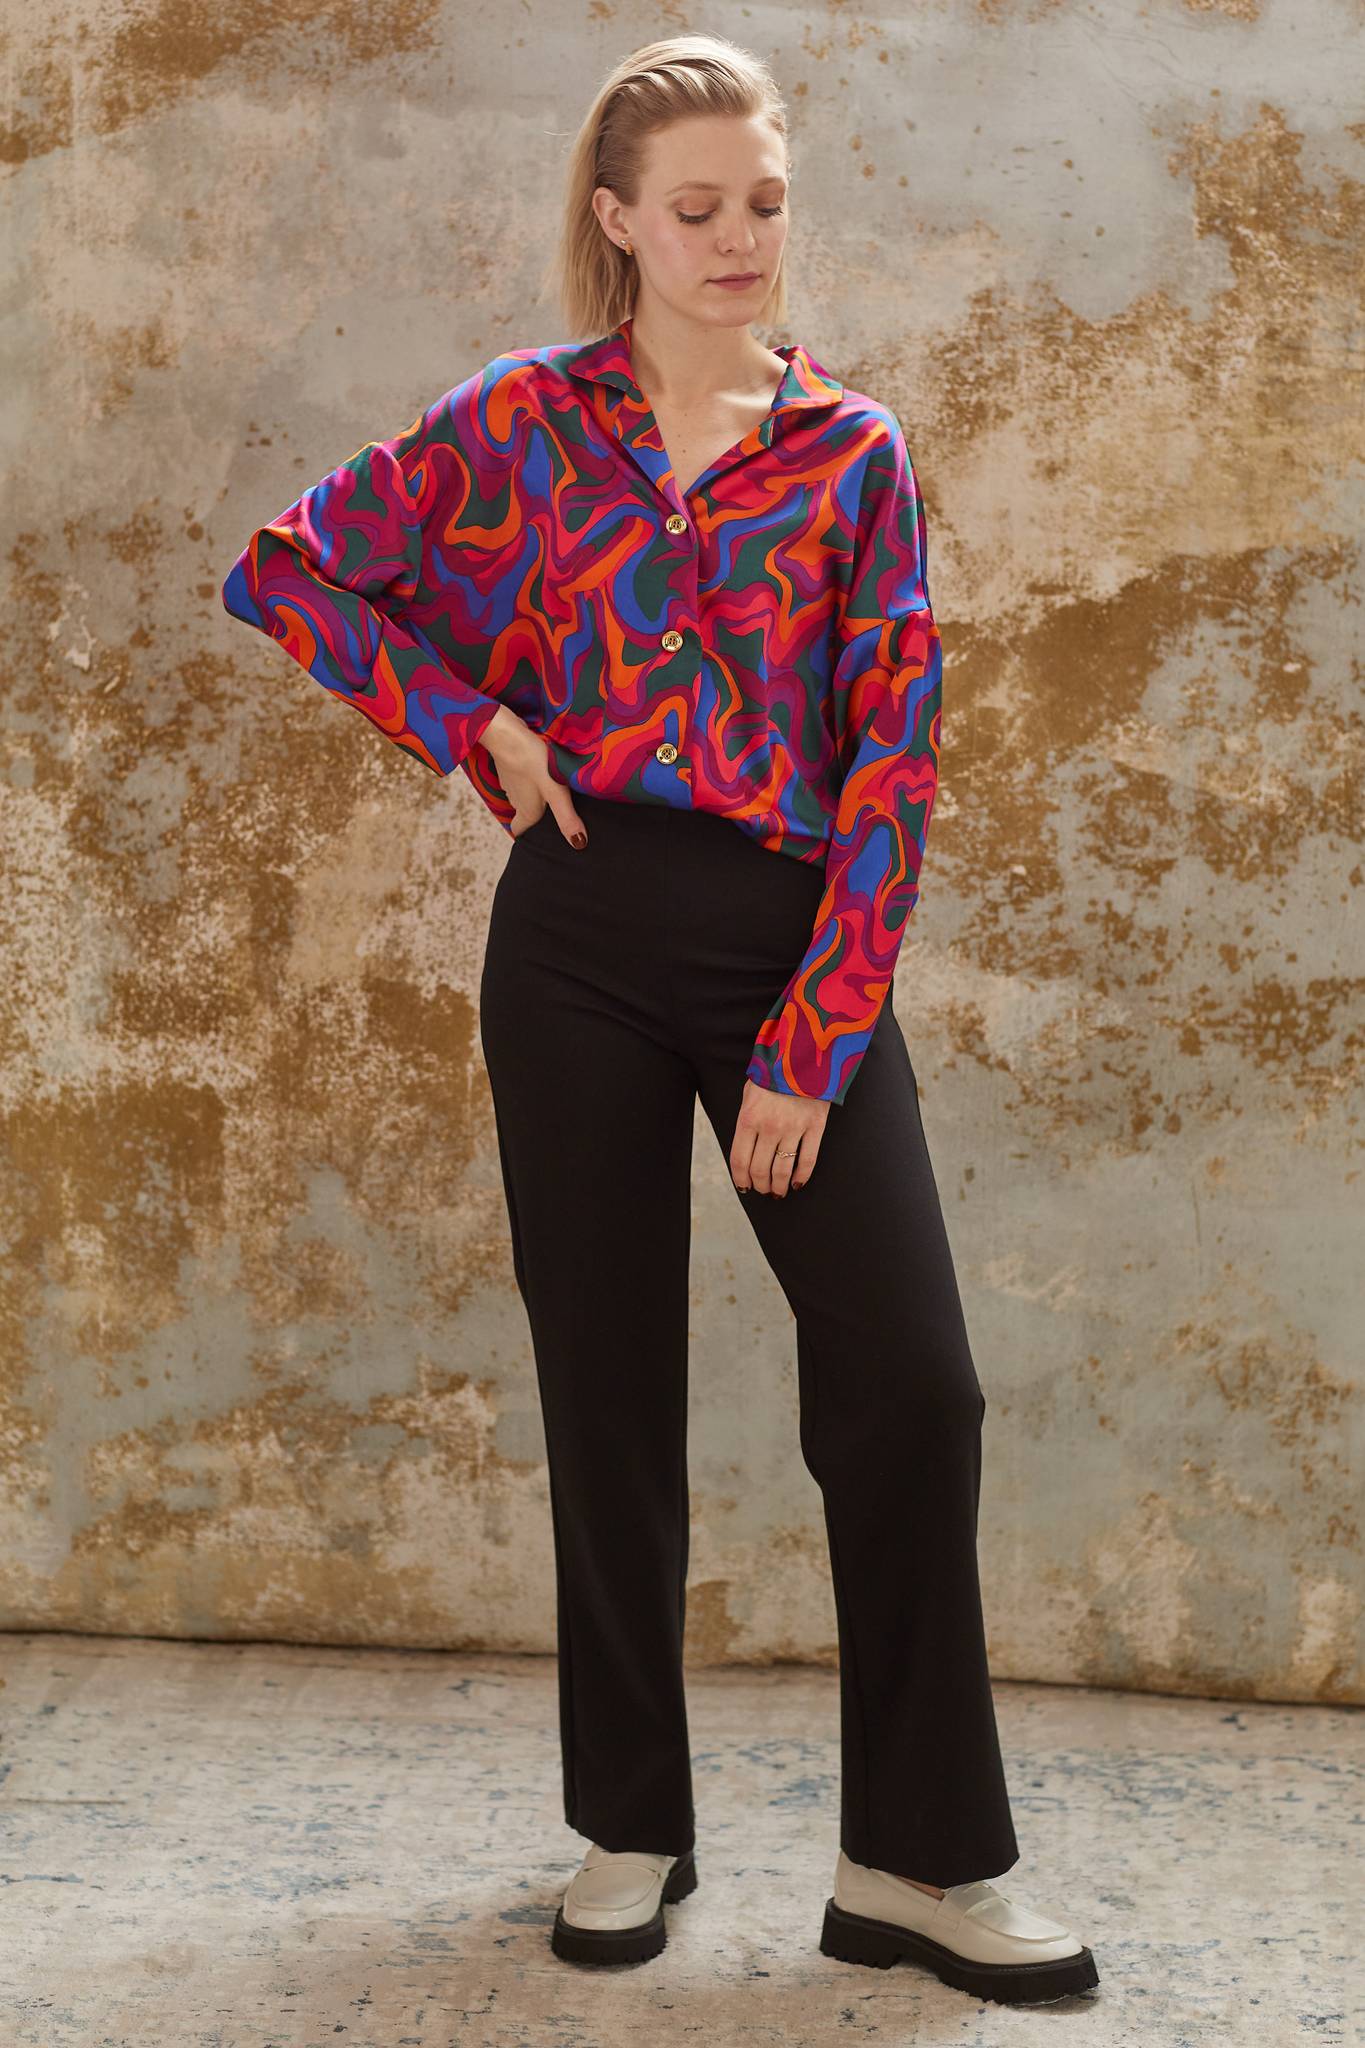 La chemise Jenna, inspirée des motifs des années 70, est confectionnée avec minutie à Montréal, ajoutant ainsi une touche d'originalité marquante à votre tenue.